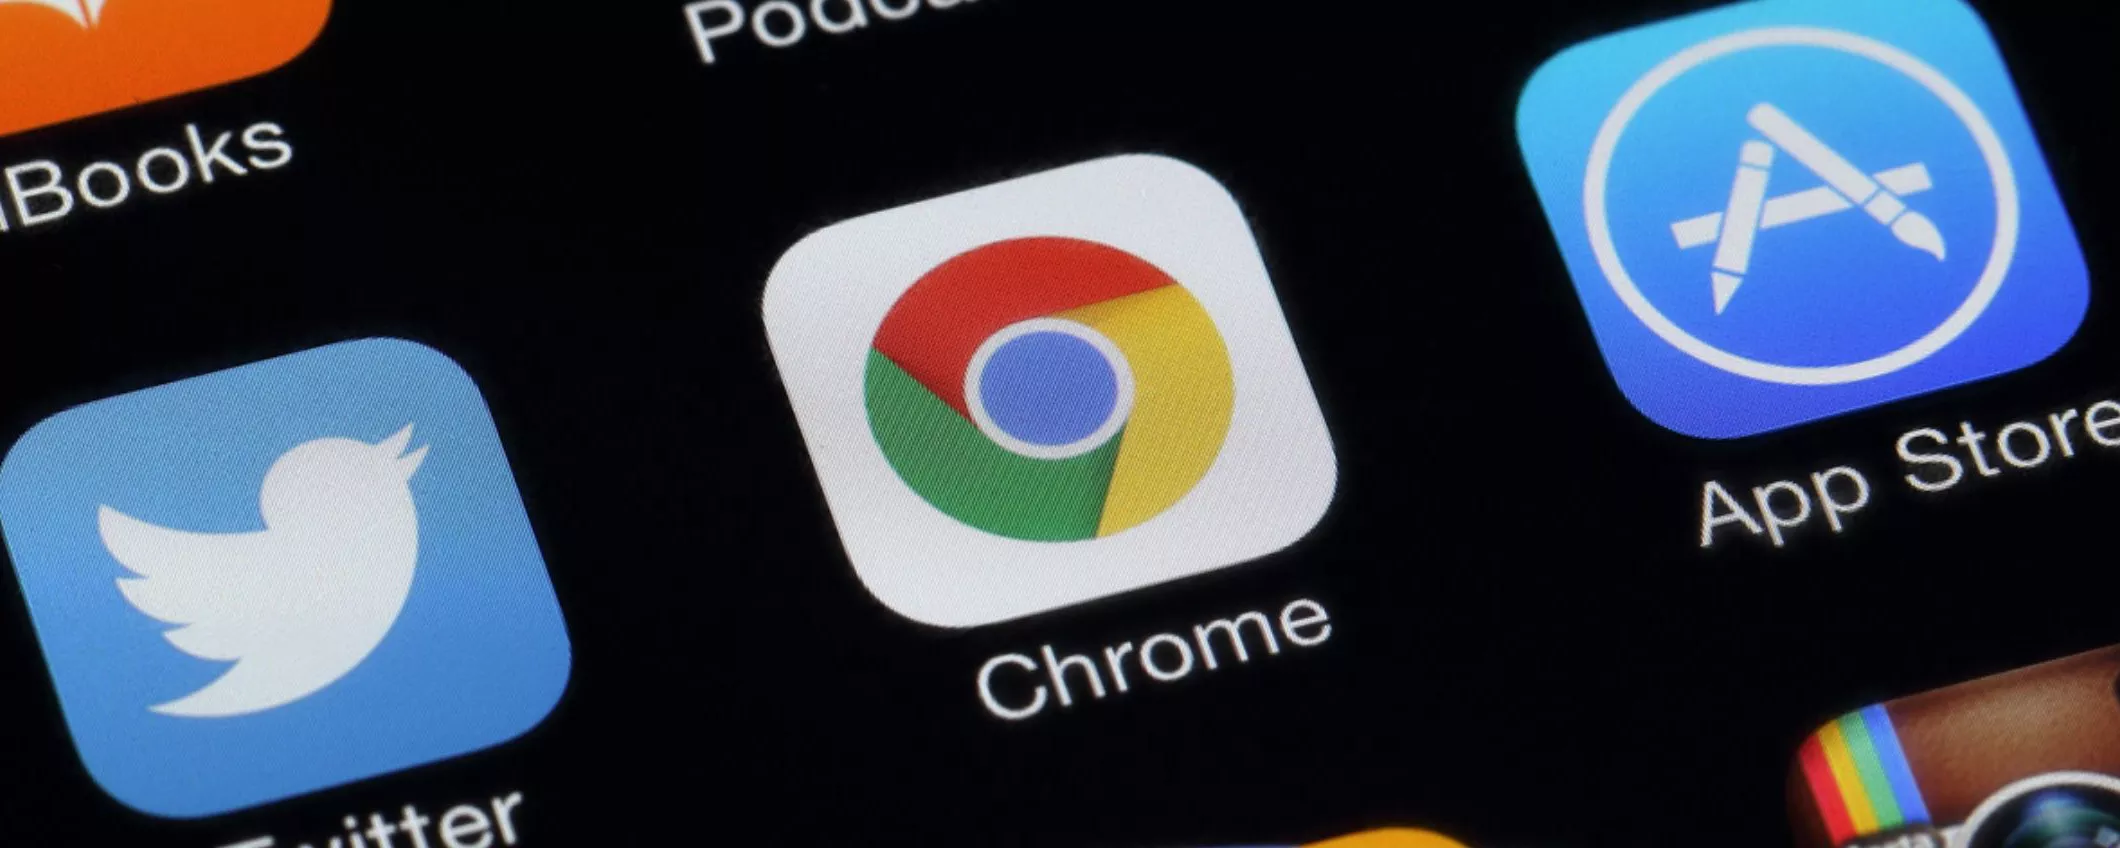 Google Chrome per iPhone: arriva la funzione tanto attesa